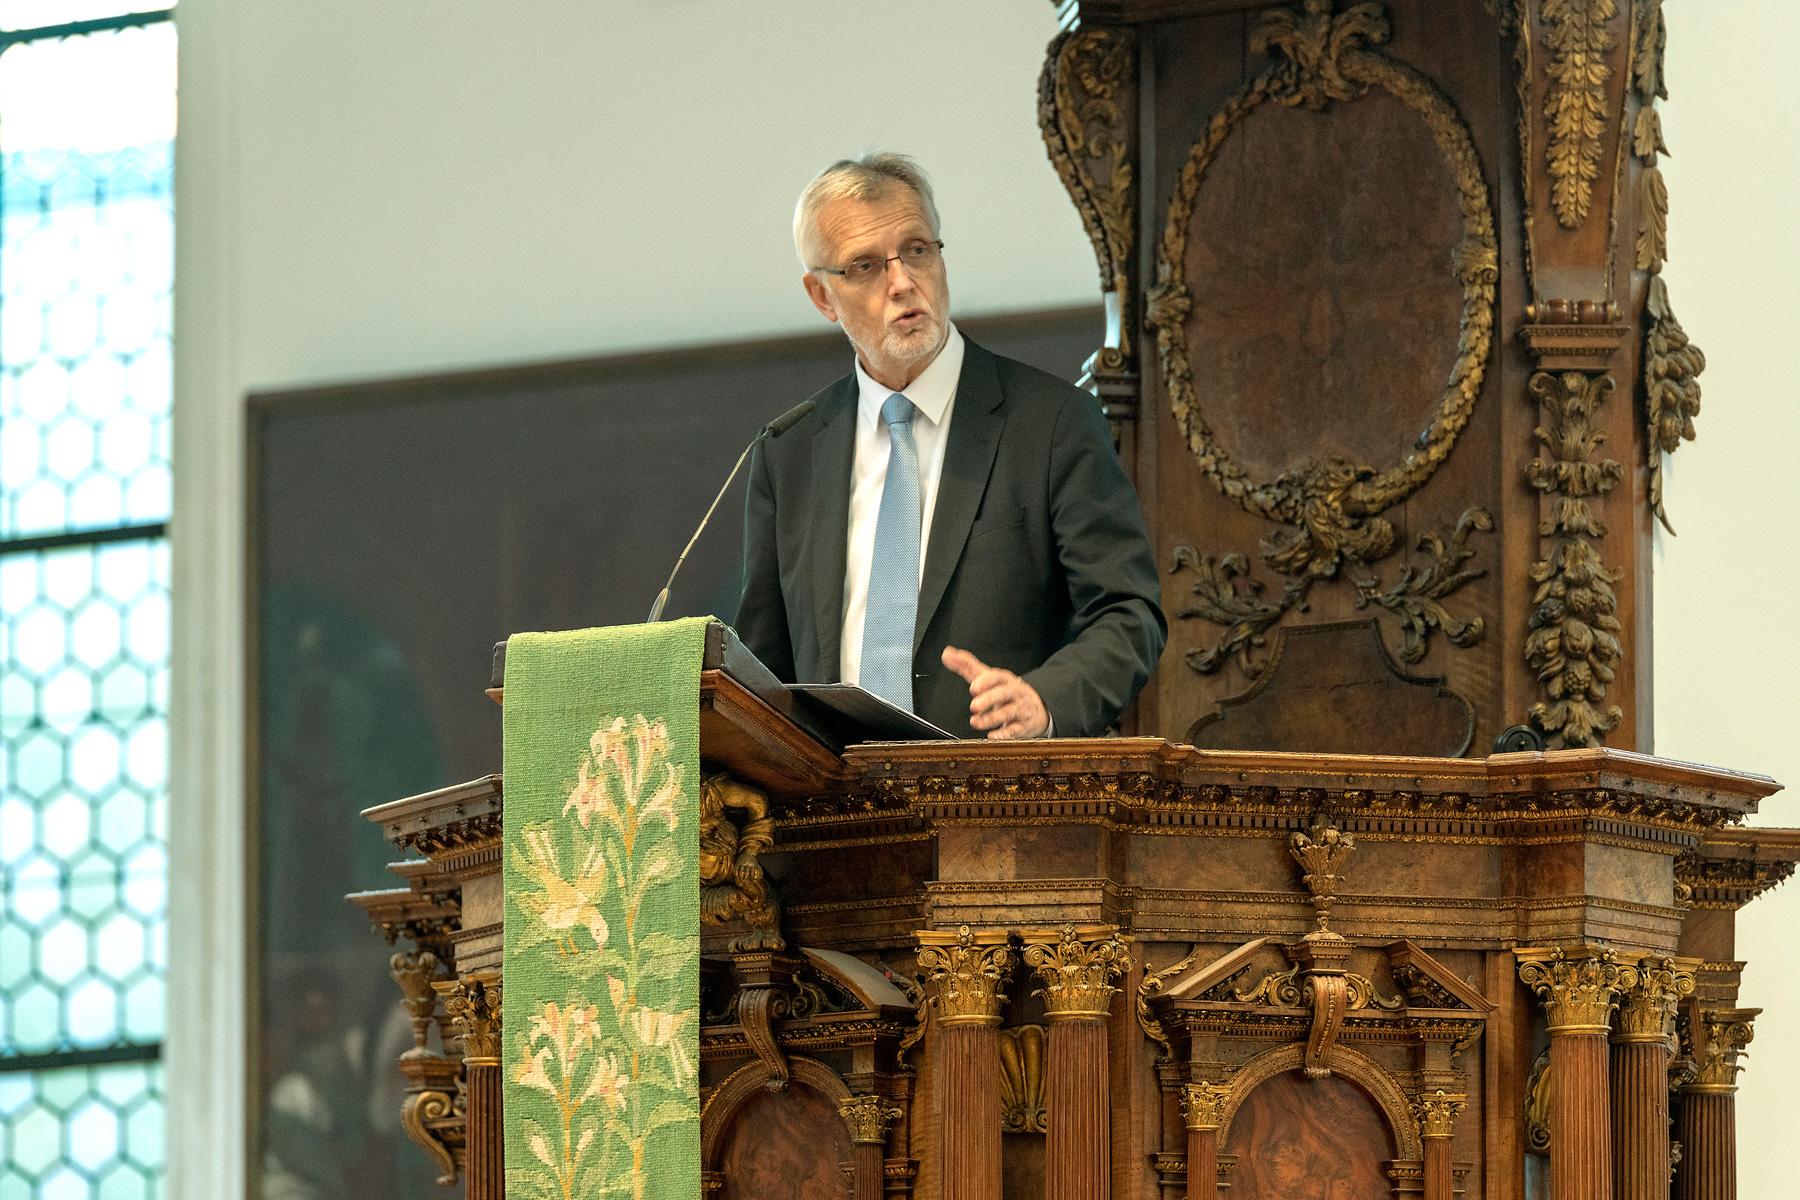 LWB-Generalsekretär Martin Junge hält eine Kanzelrede während des theologischen Symposiums in Augsburg. Foto: Universität Augsburg